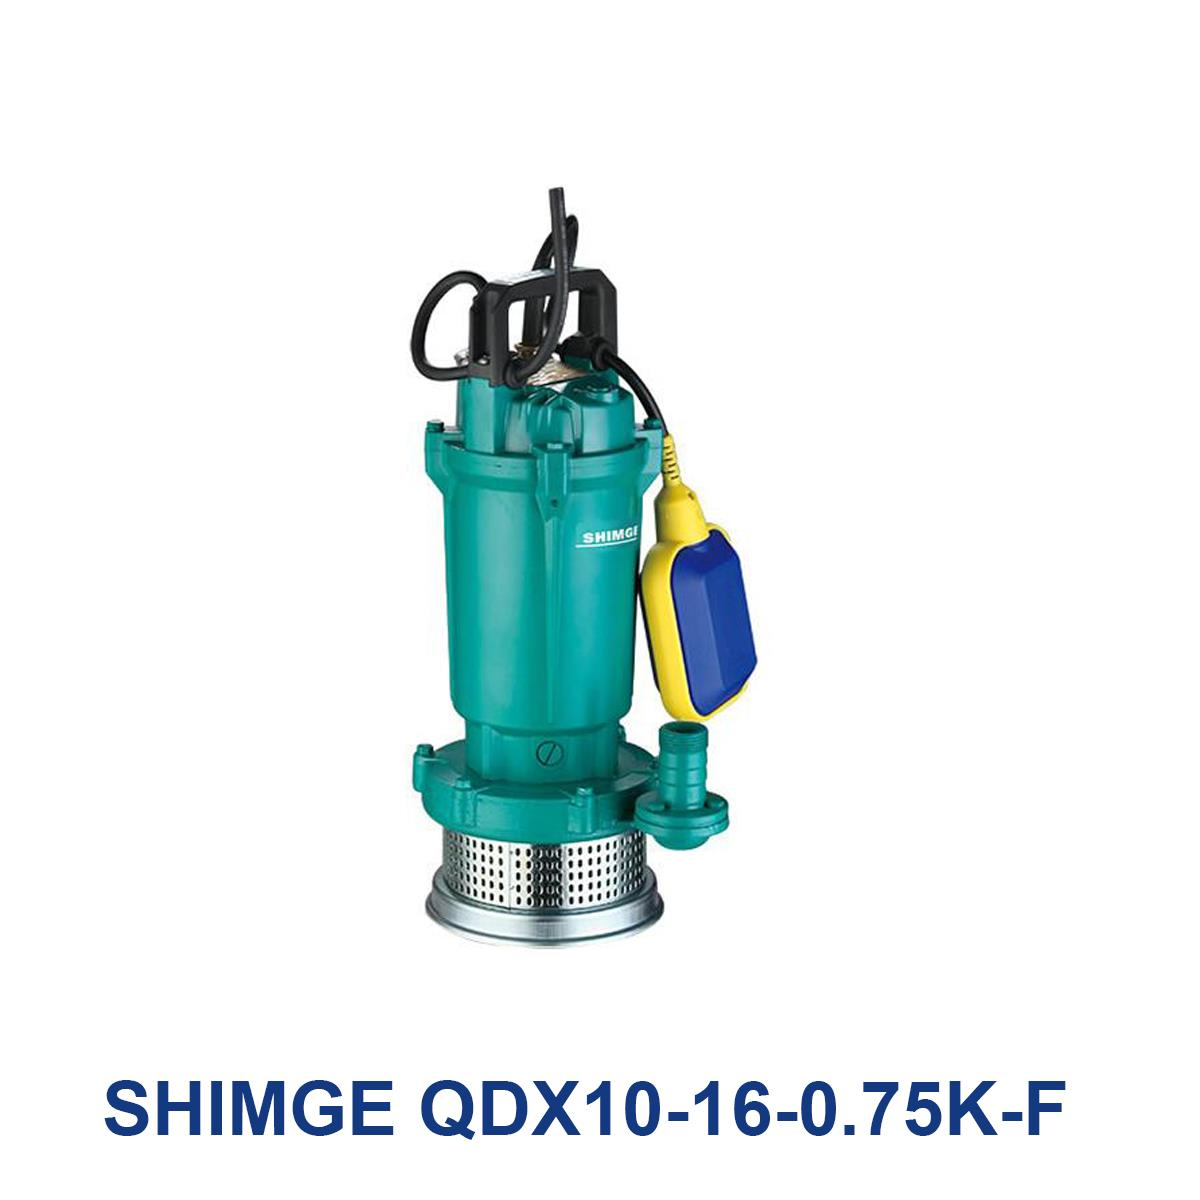 SHIMGE-QDX10-16-0.75K-F